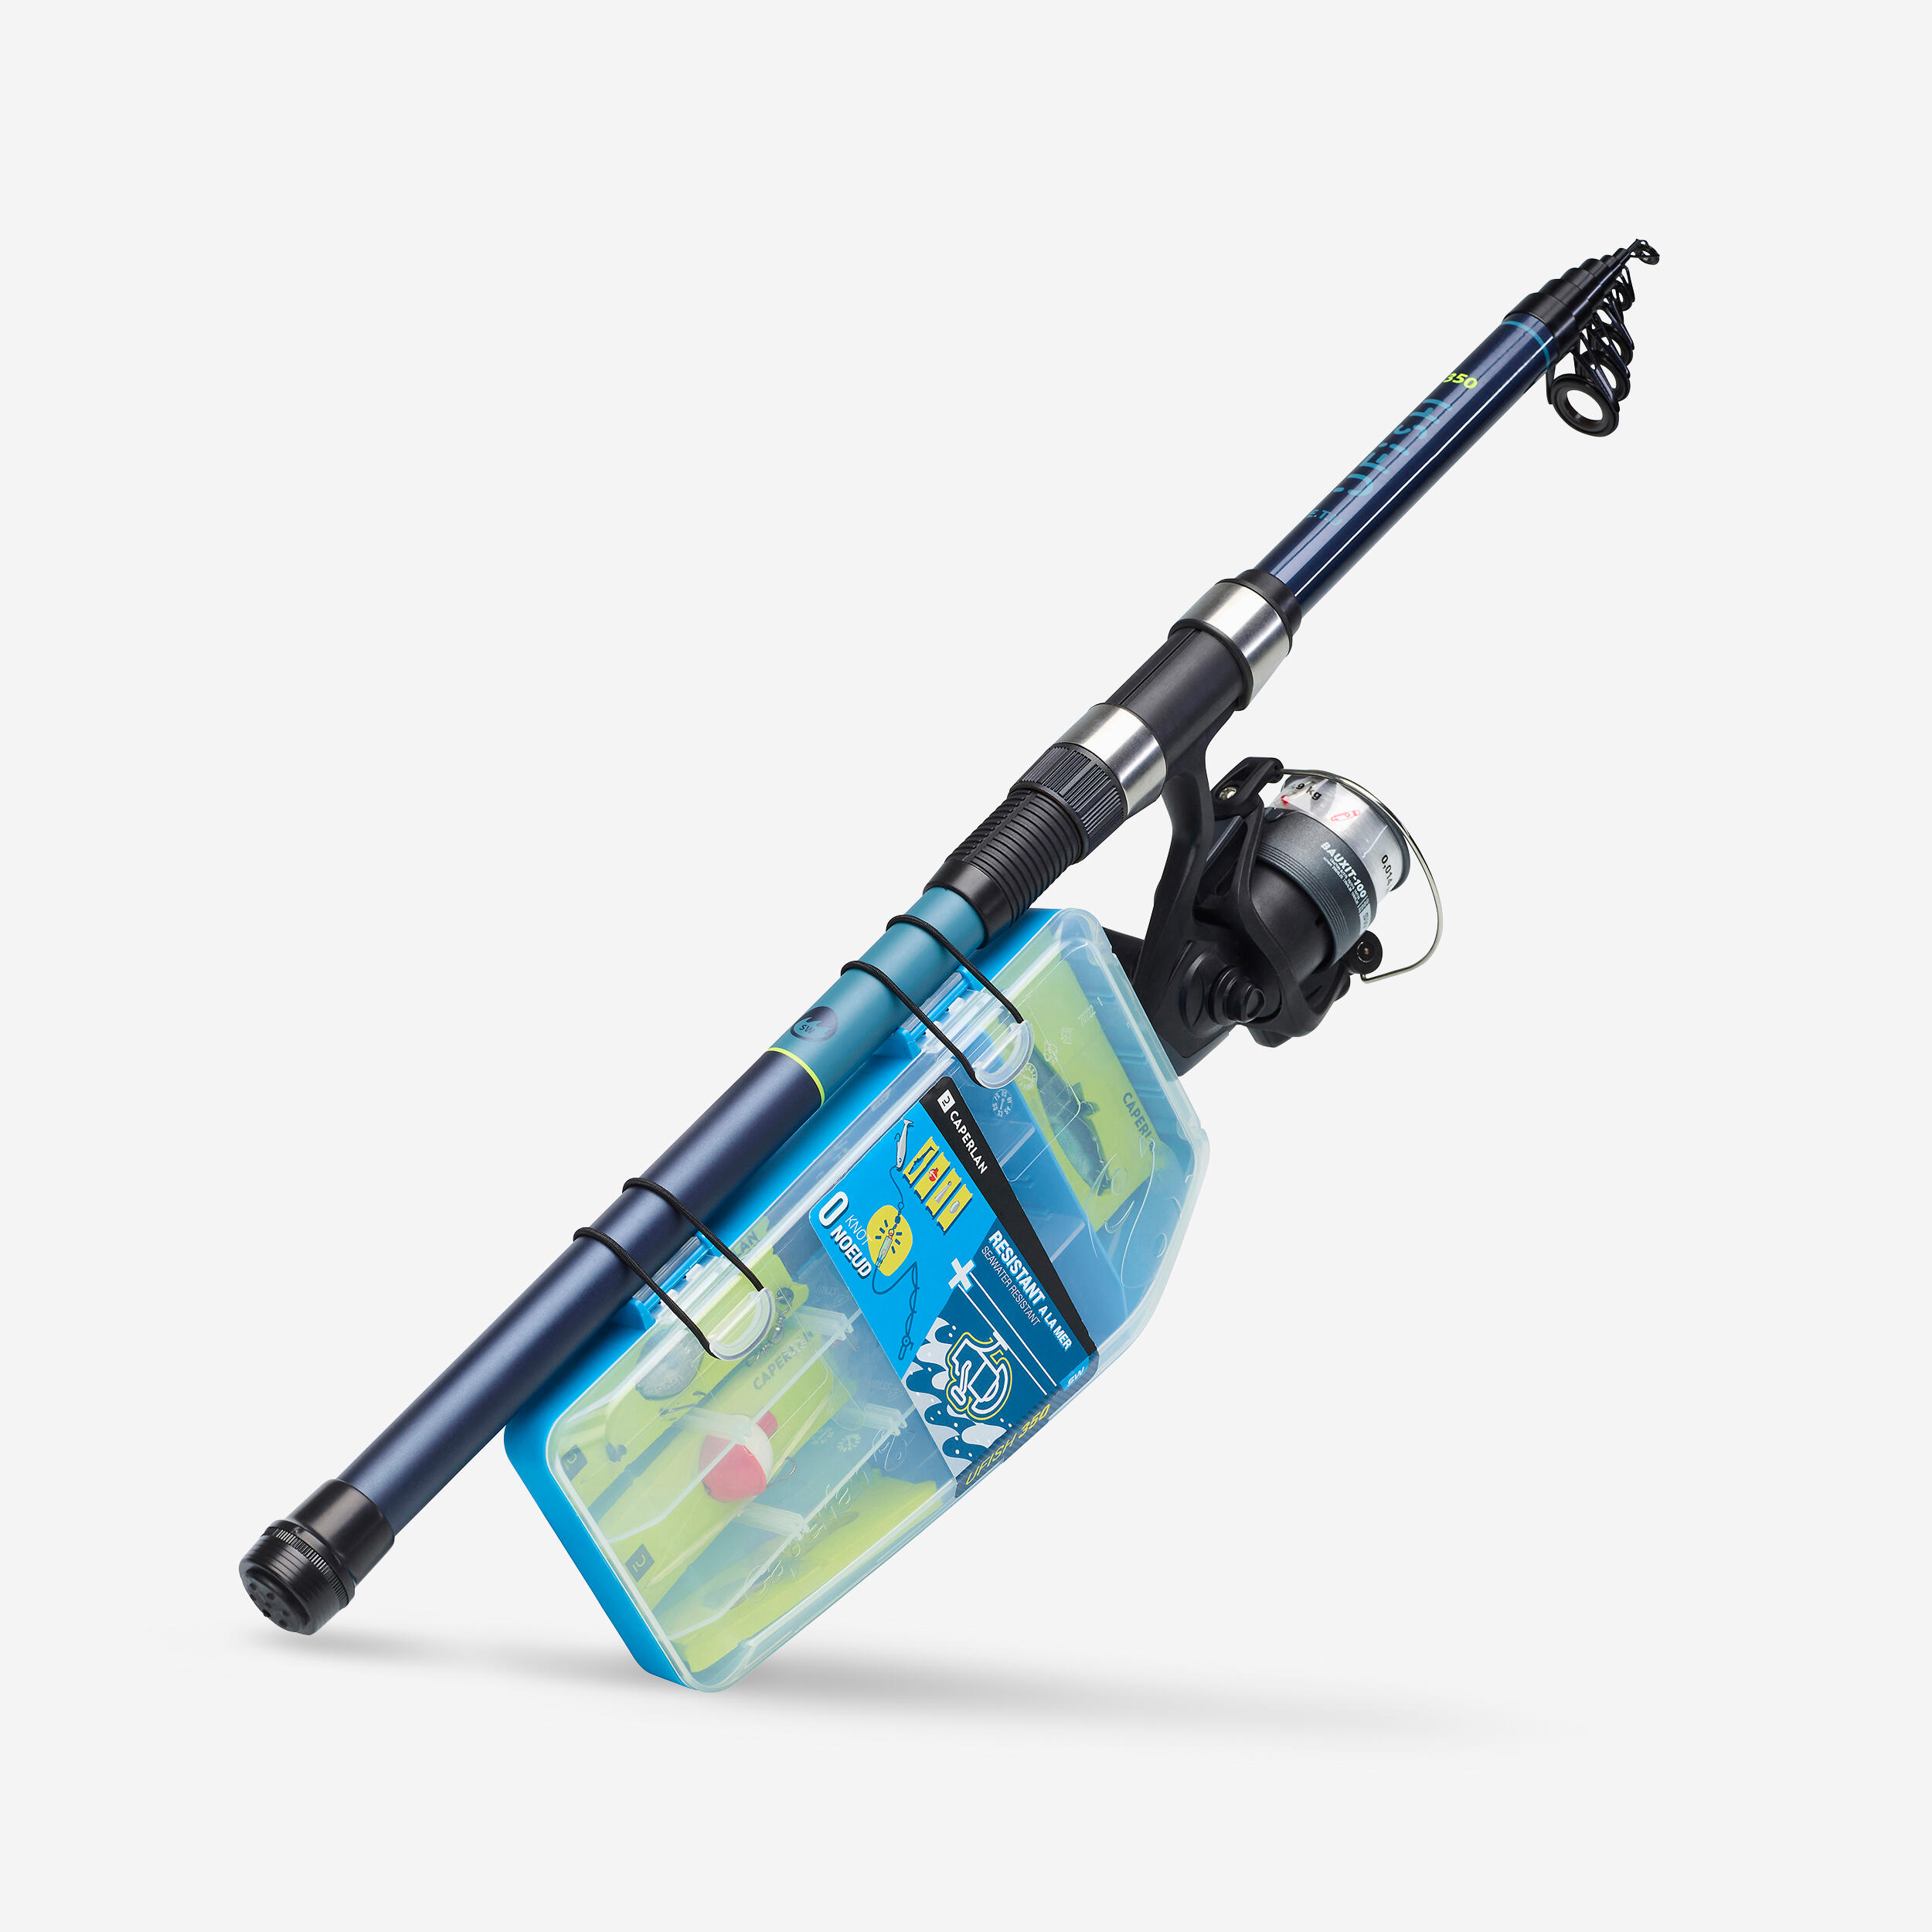 Saltwater fishing Starter Kits